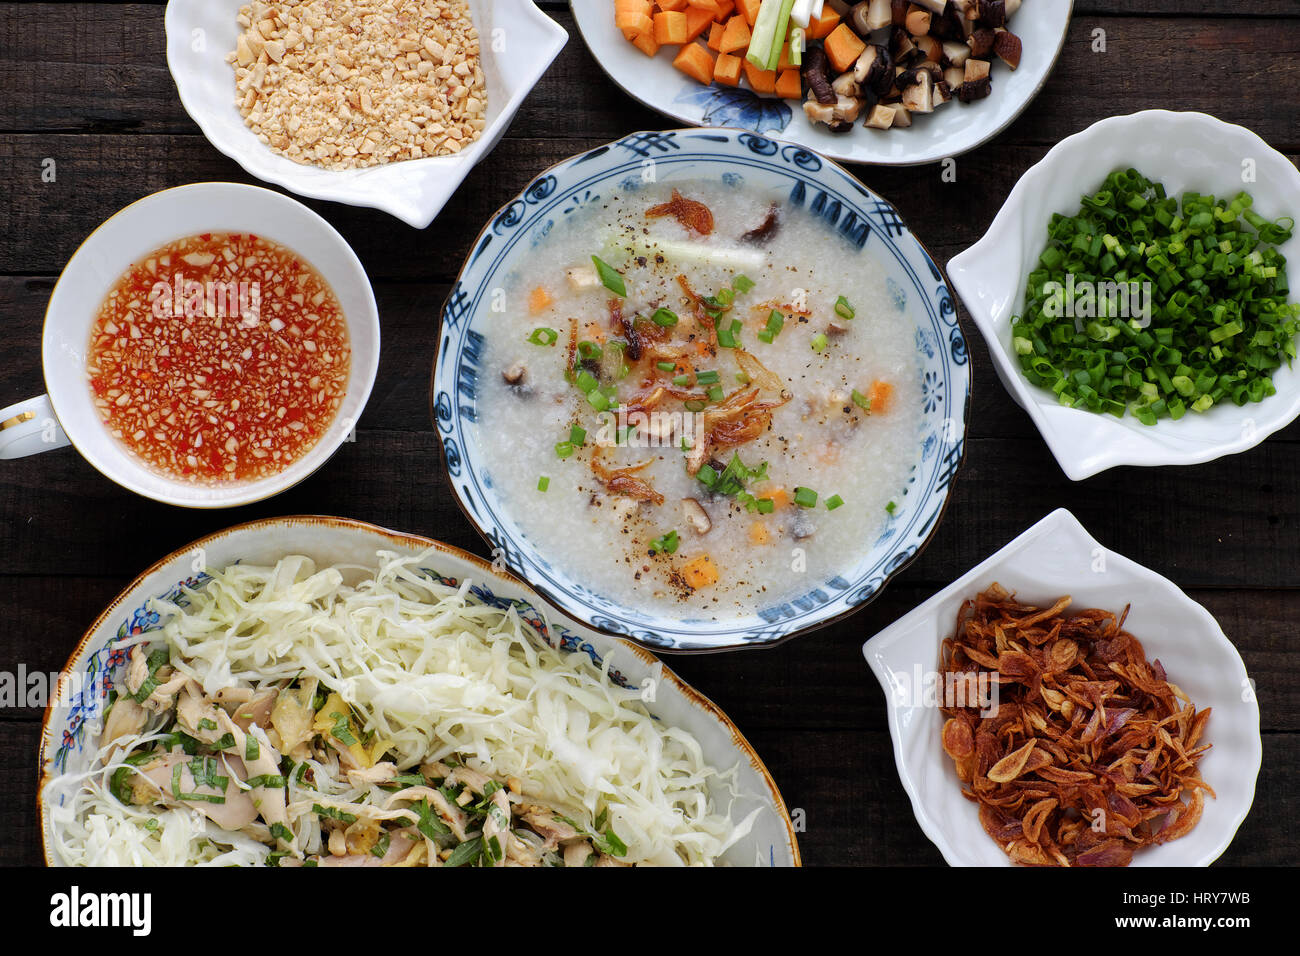 La cuisine asiatique pour les personnes malades, riz au poulet gruau de riz, carotte, oignon, chou, toon. Bol de soupe de poulet avec légumes, appelez chao ga Banque D'Images